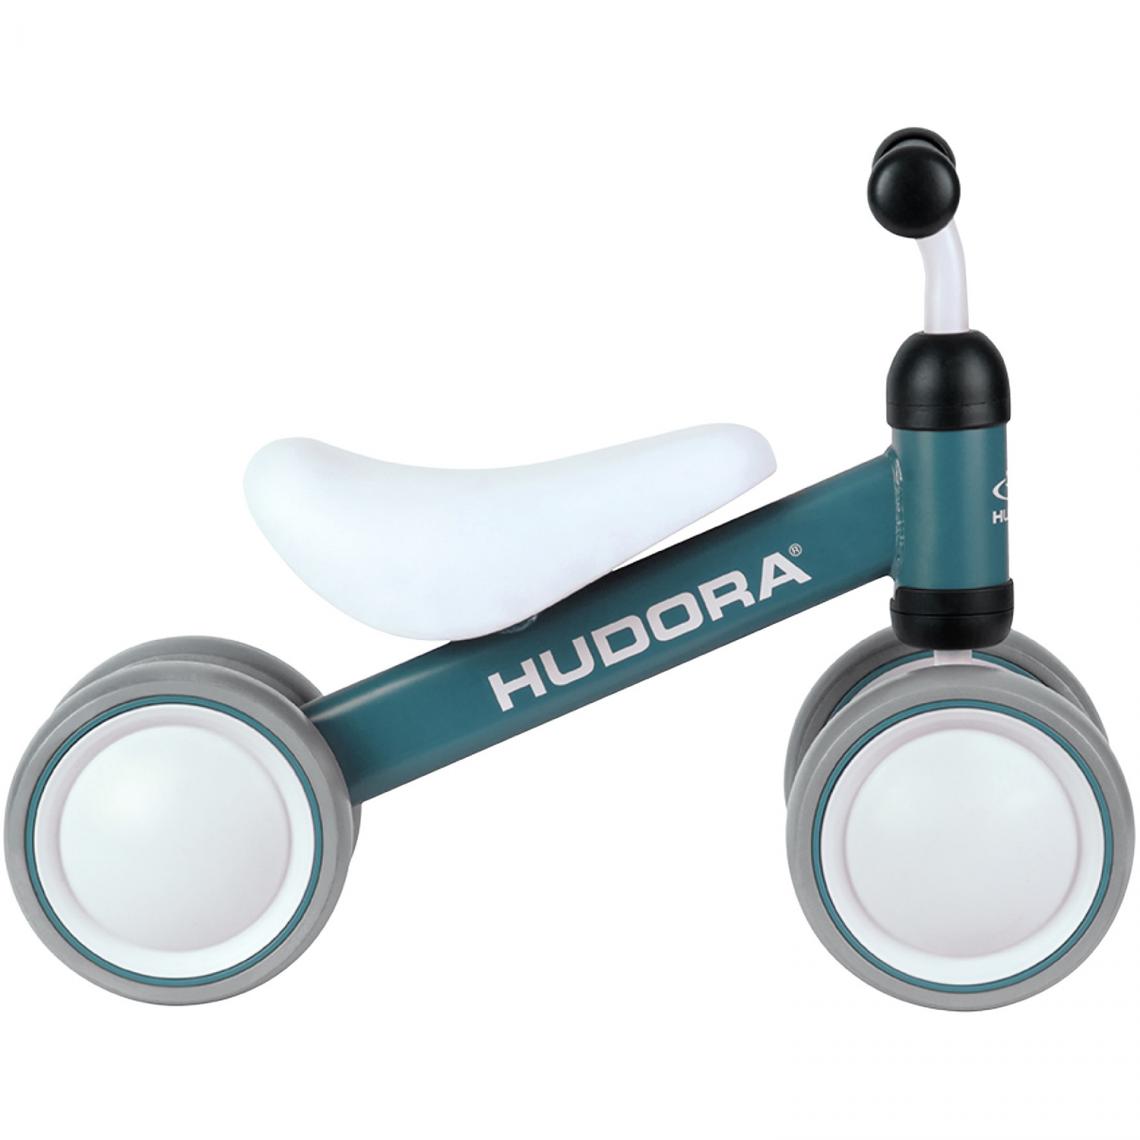 Hudora - Hudora 10411 - Draisienne mini pour enfant, bleu - Tricycle